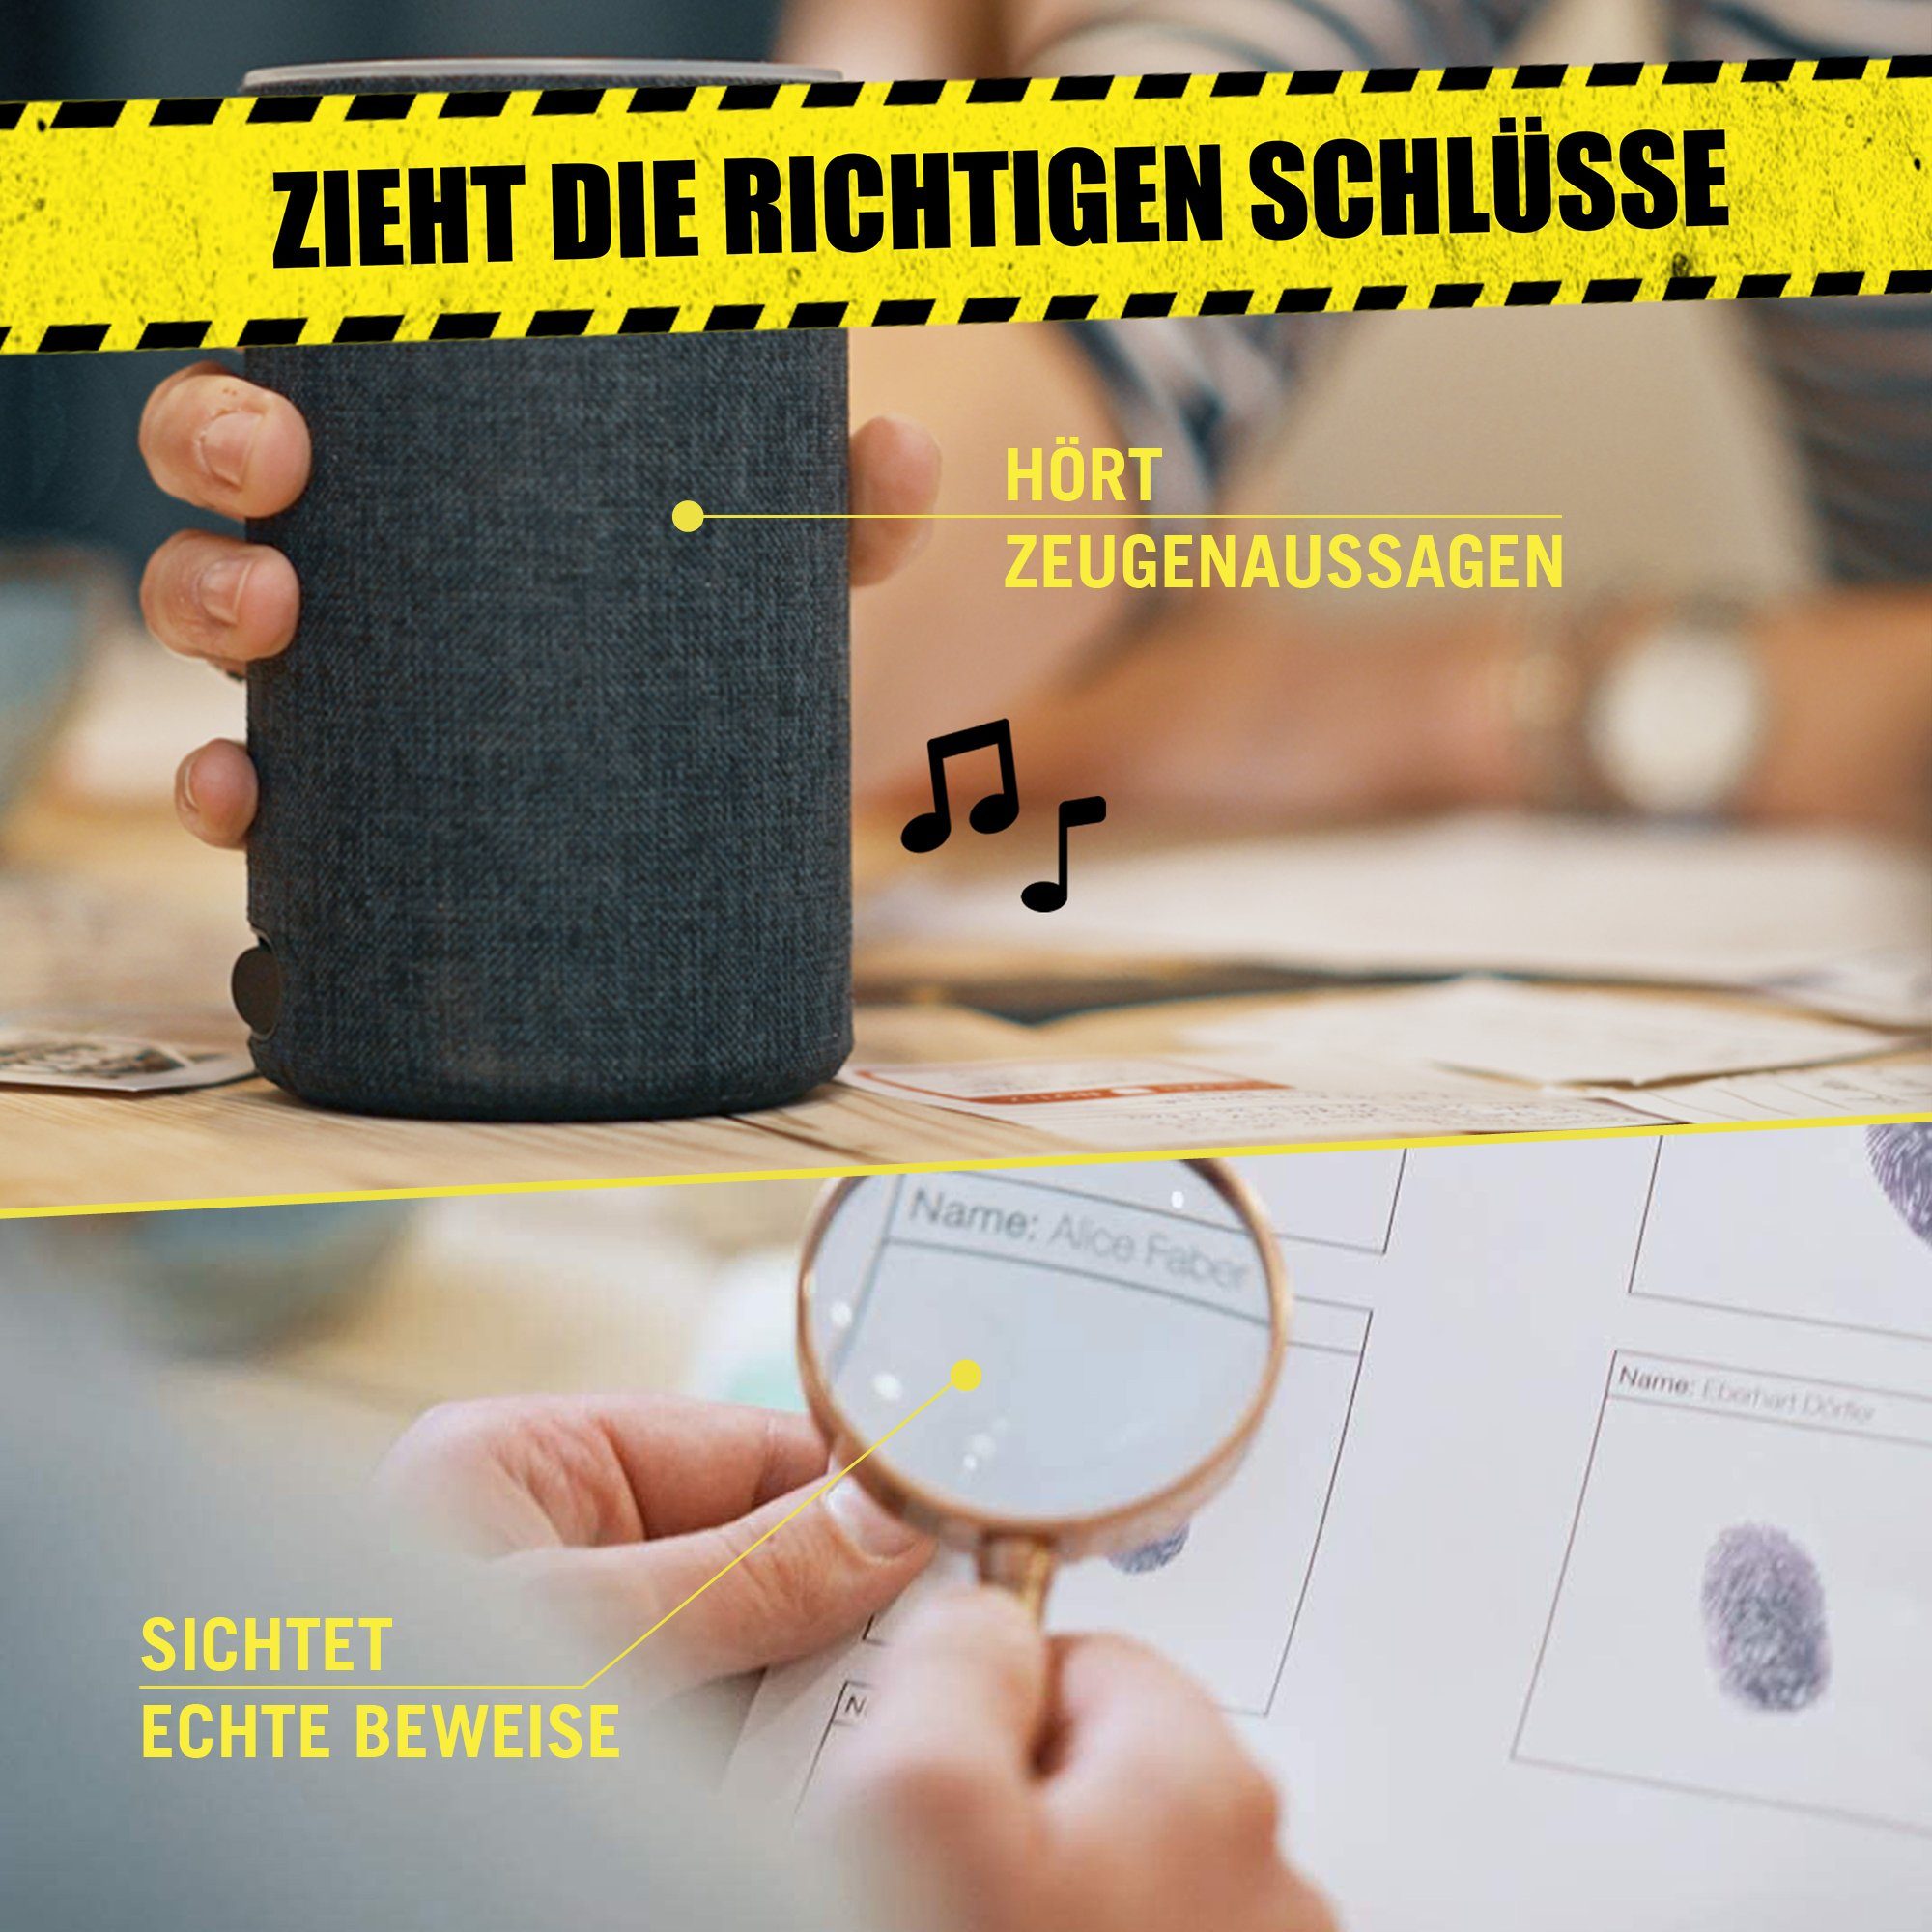 Hidden Games Tatort Germany Fall - Ein in Made Der Spiel, Drahtseilakt, 4. Krimispiel